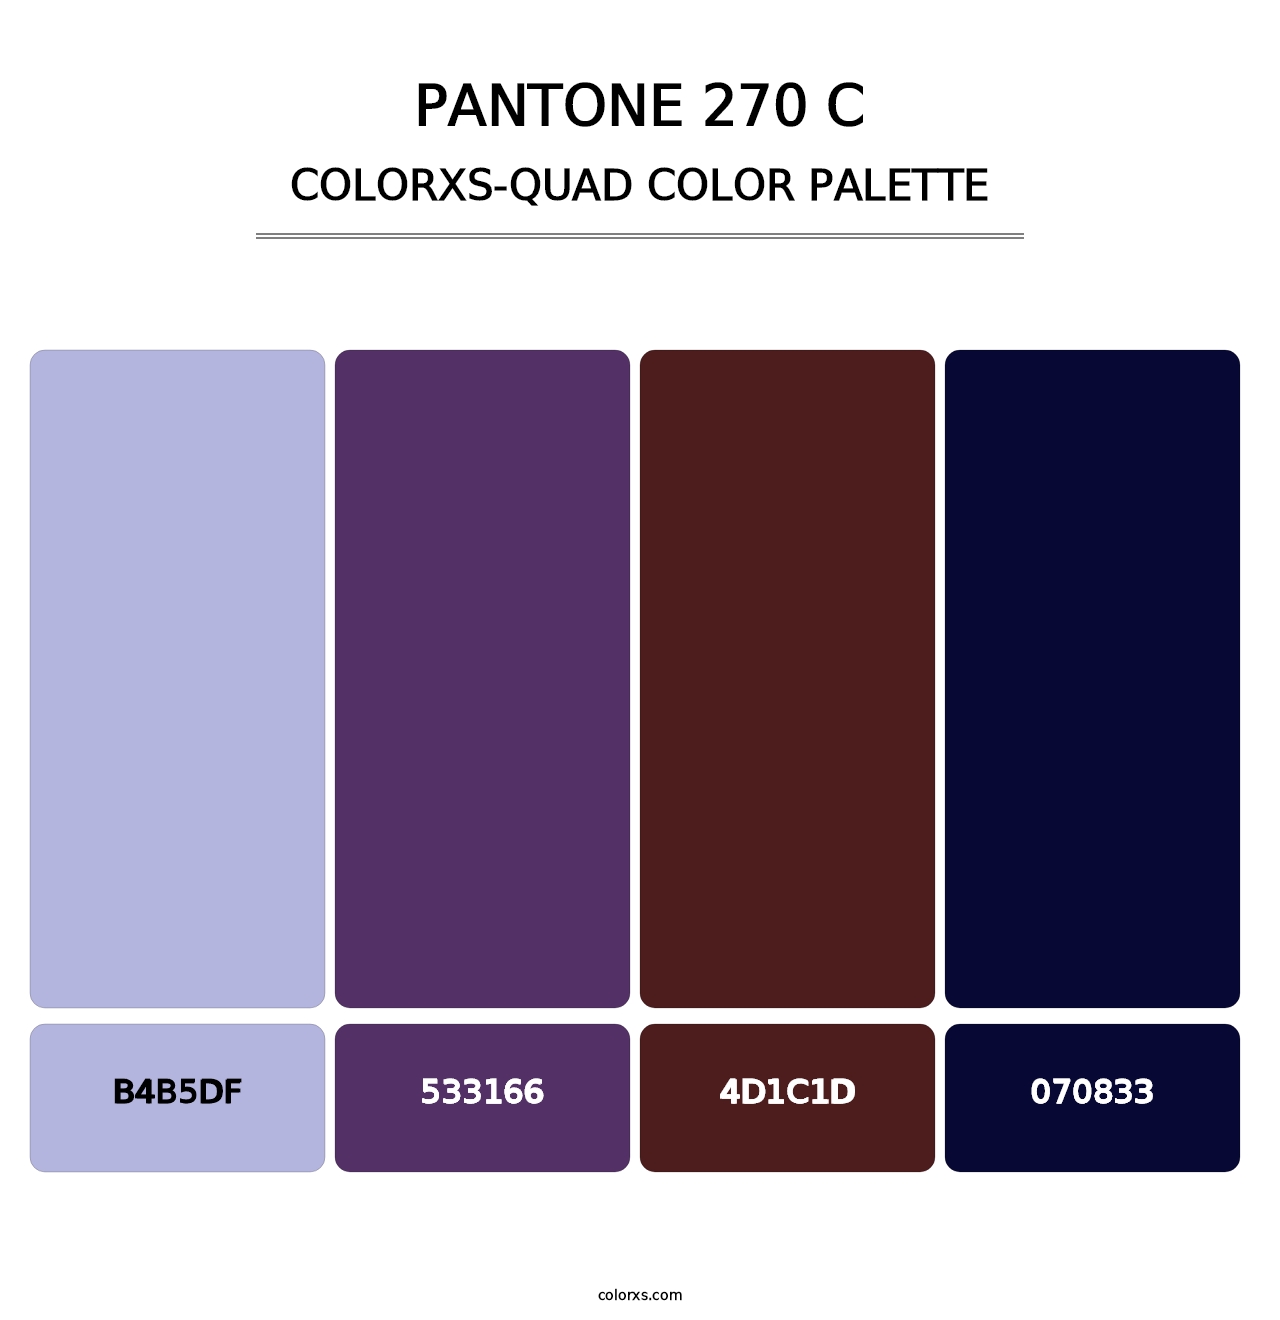 PANTONE 270 C - Colorxs Quad Palette